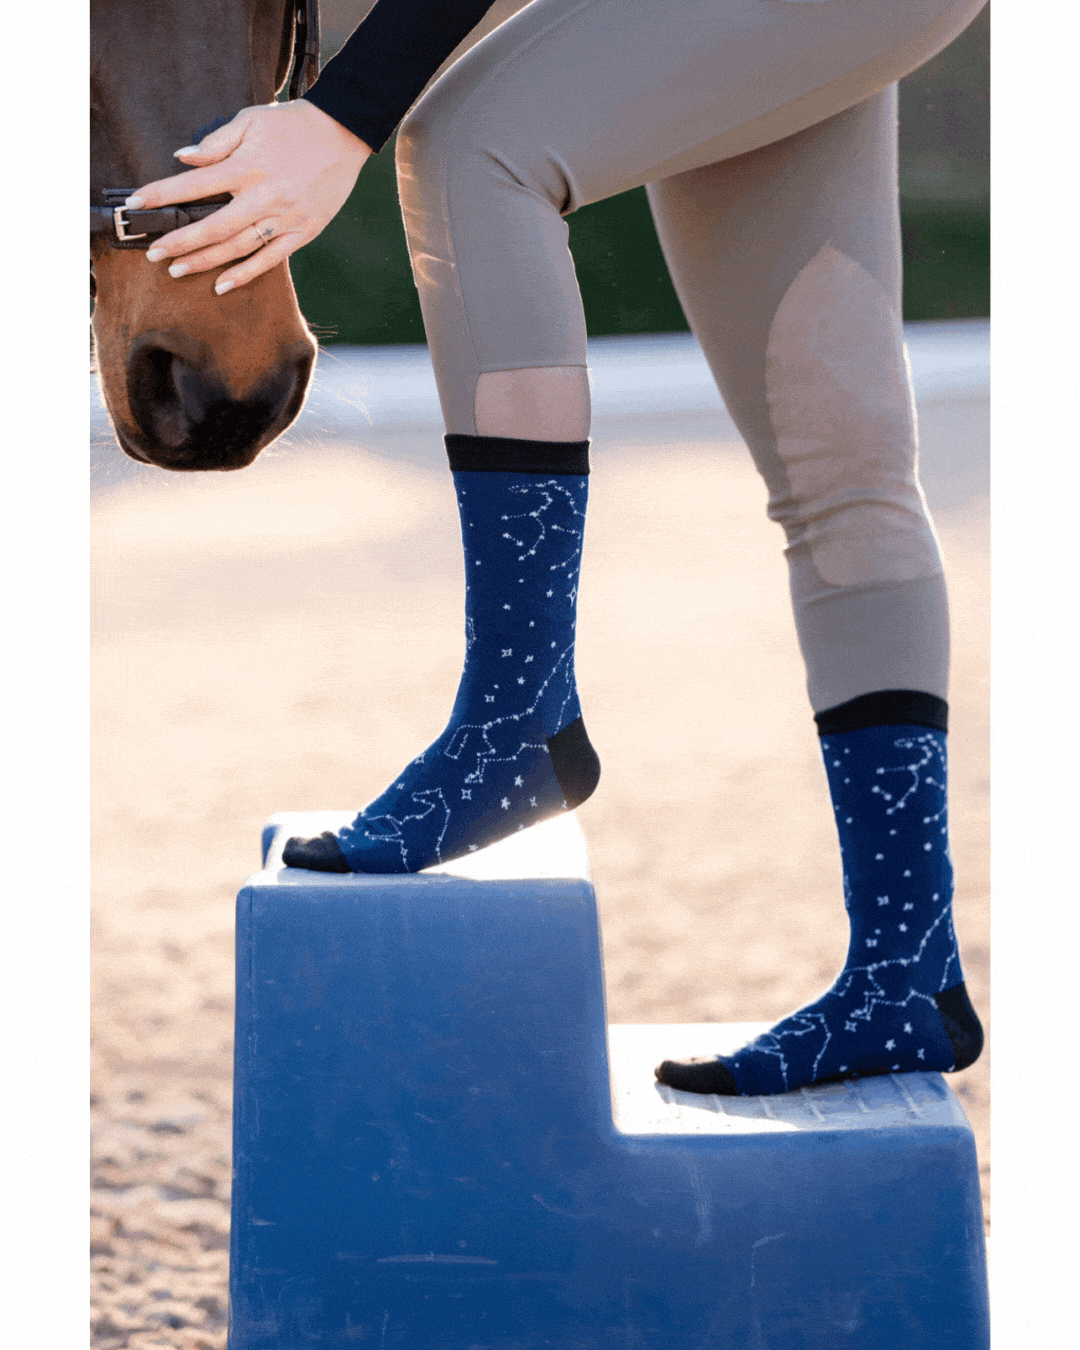 dreamers & schemers Crew Sock Astrology Crew Socks equestrian boot socks boot socks thin socks riding socks pattern socks tall socks funny socks knee high socks horse socks horse show socks